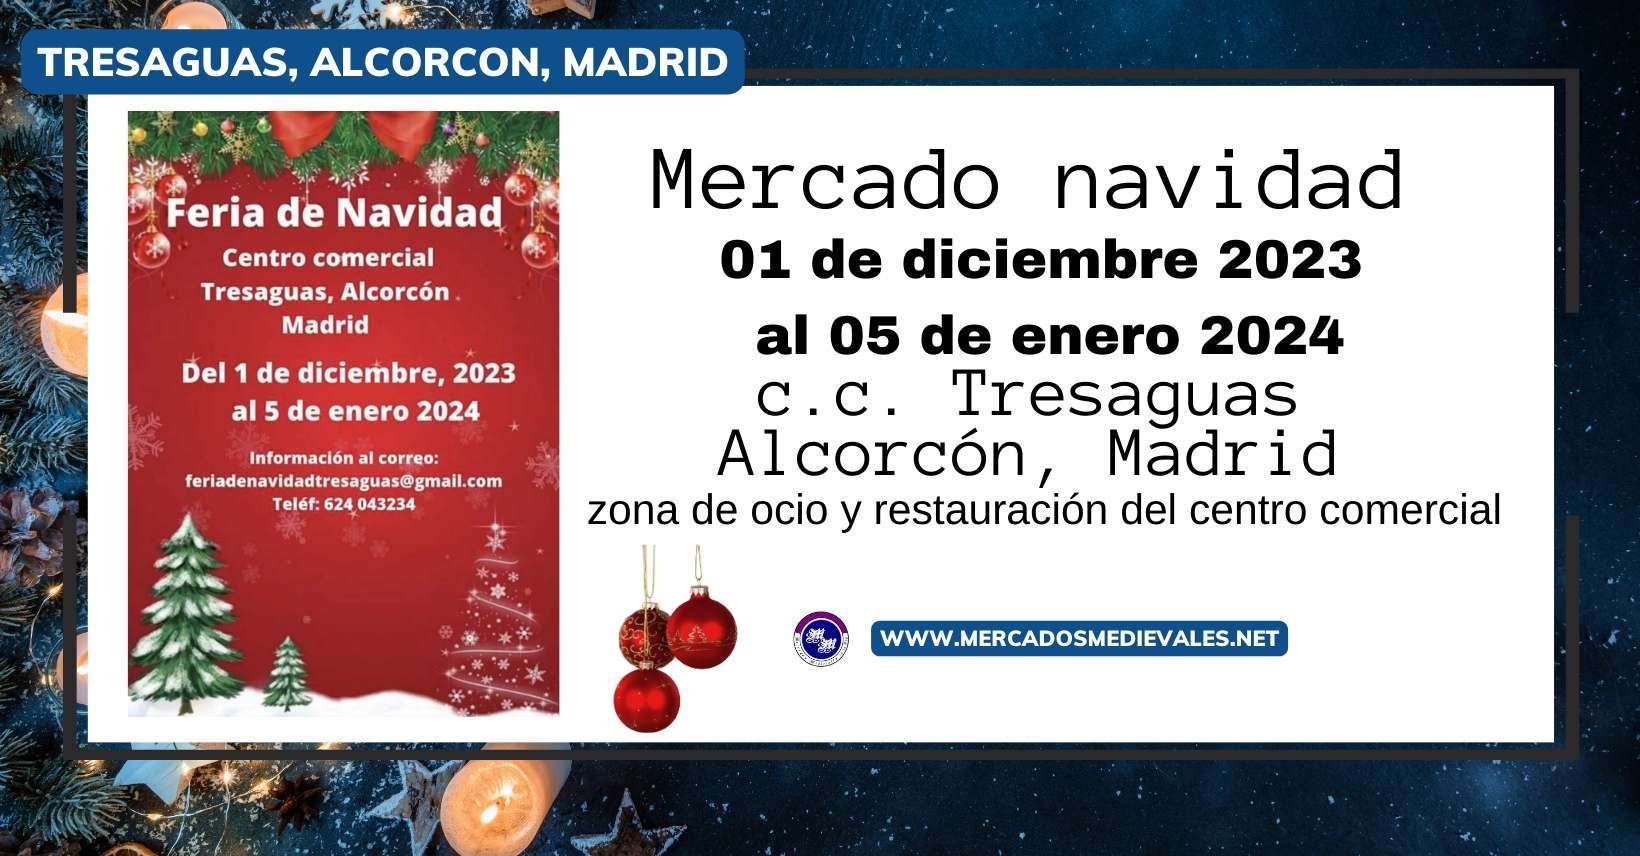 mercadosmedievales.net - Feria De Navidad Tresaguas De Alcorcón ( Madrid ) 2023 redes